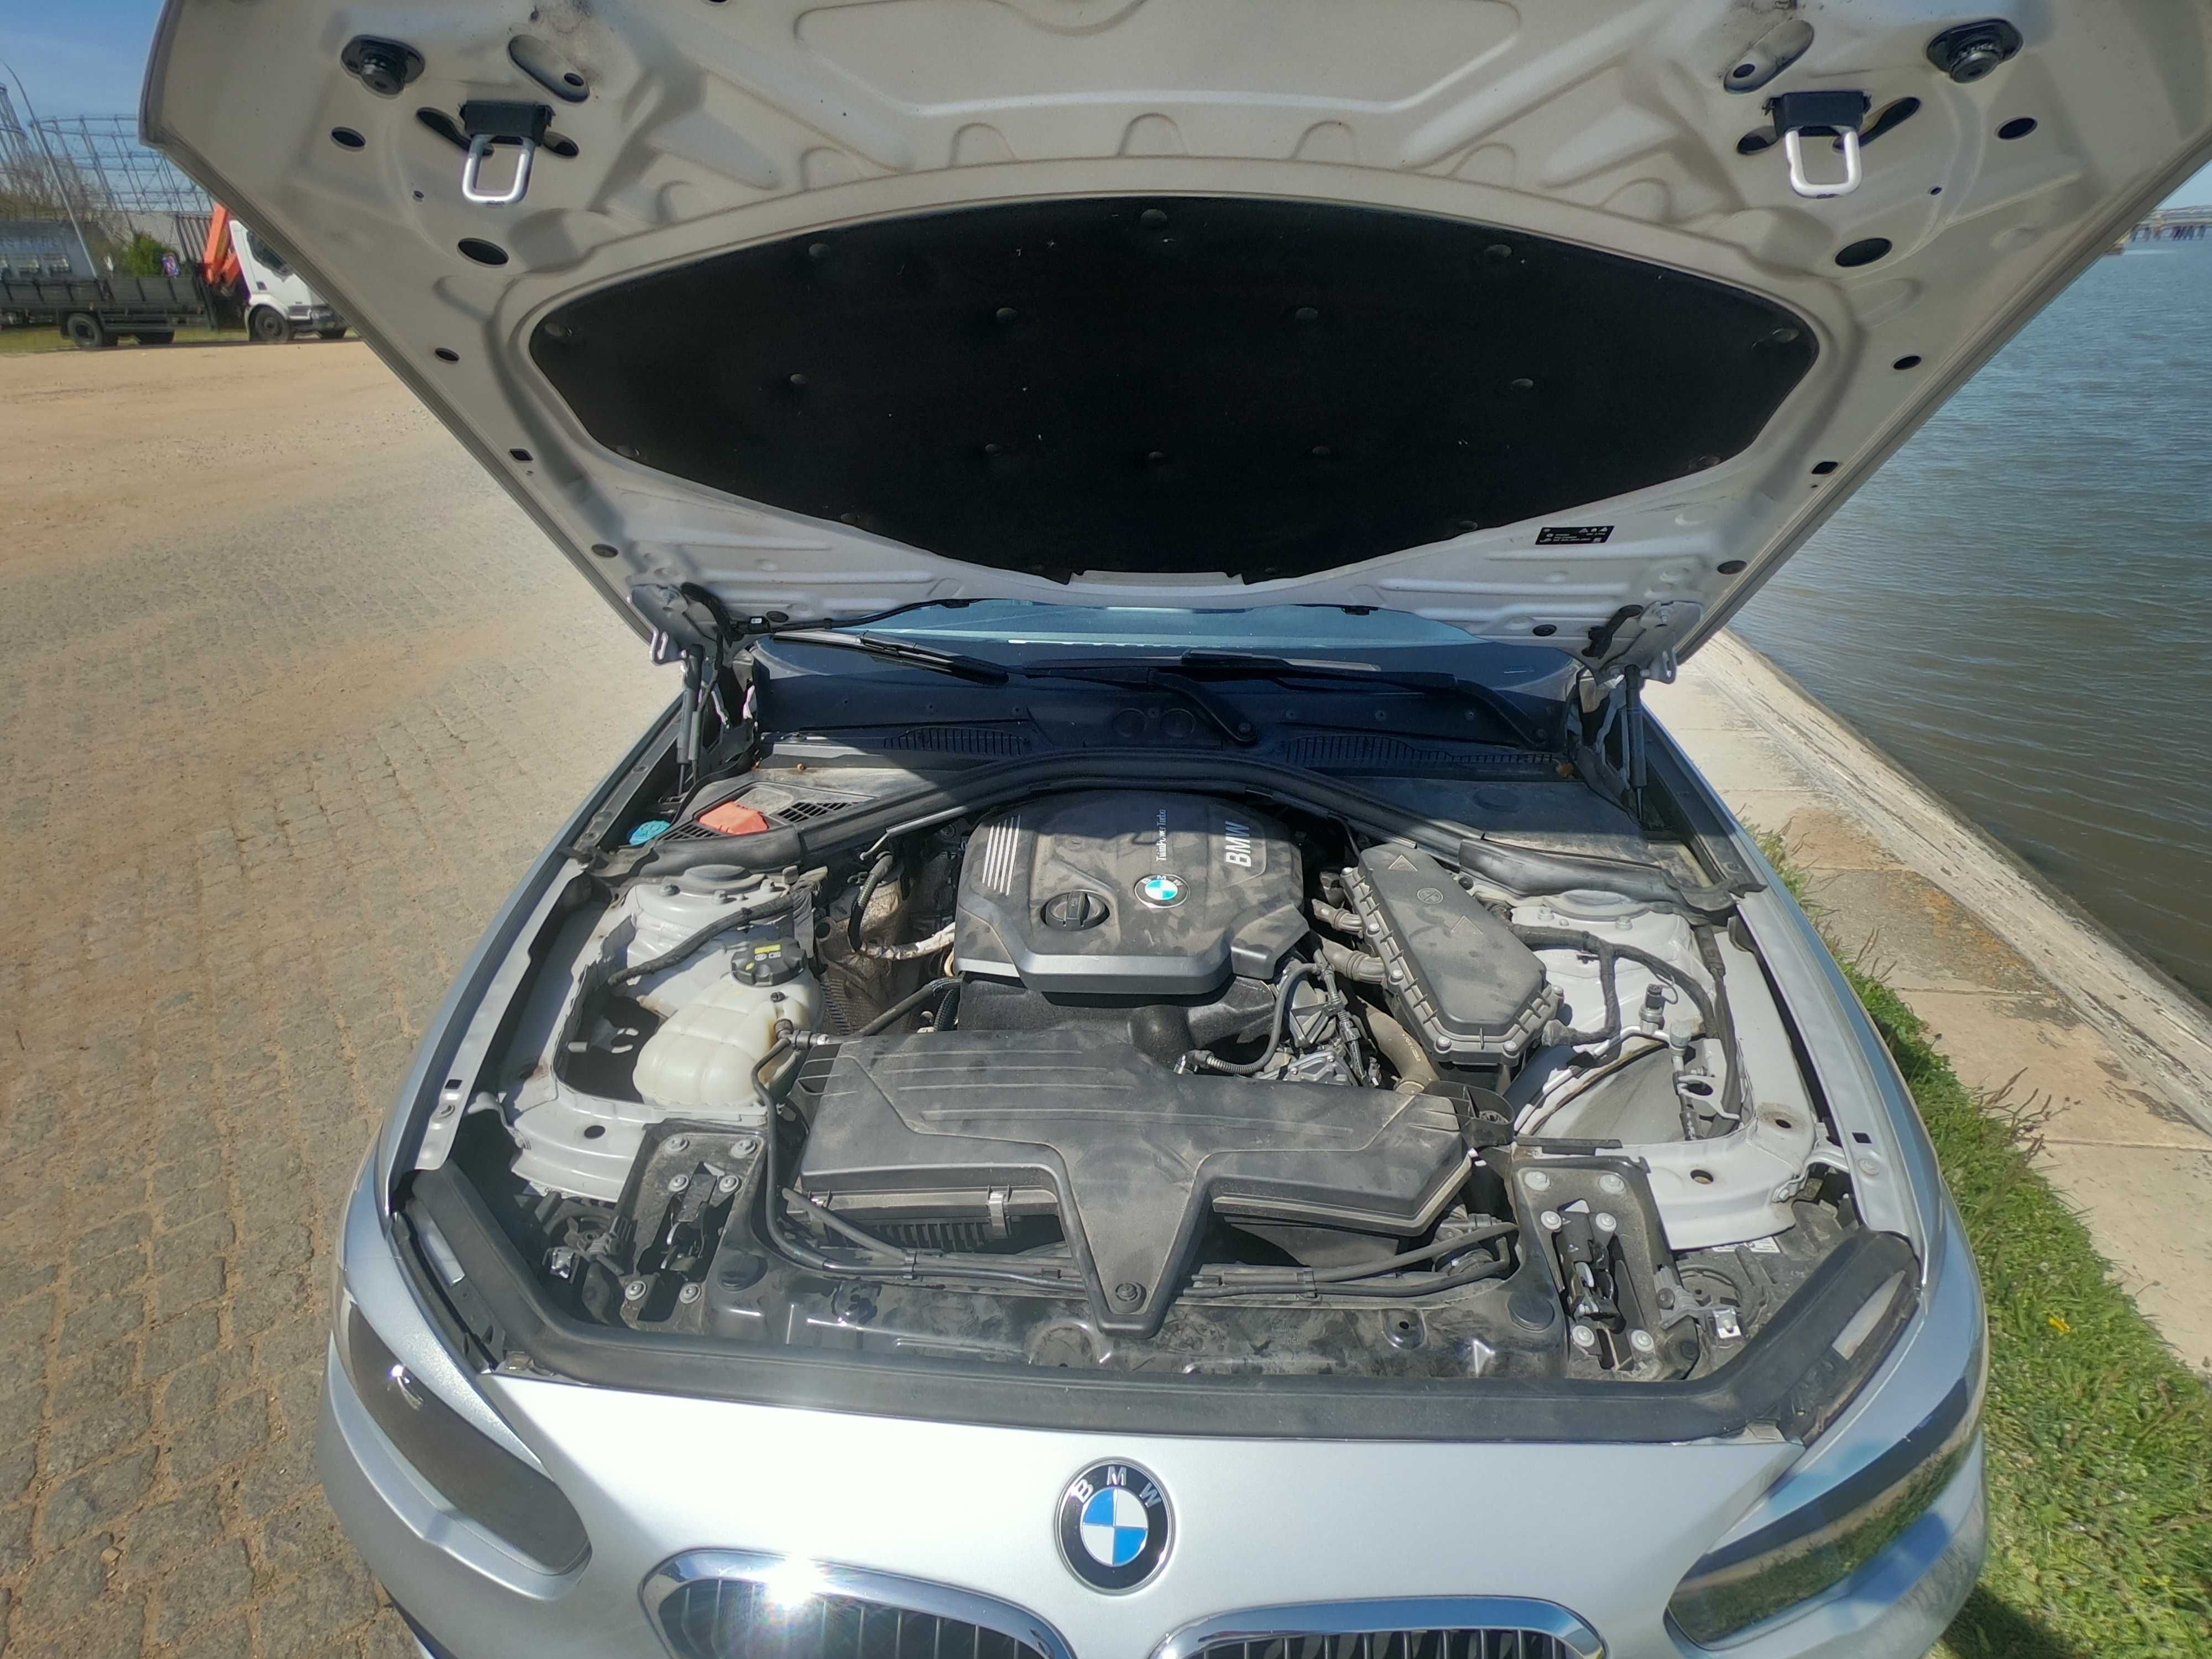 BMW 116 d Advantage